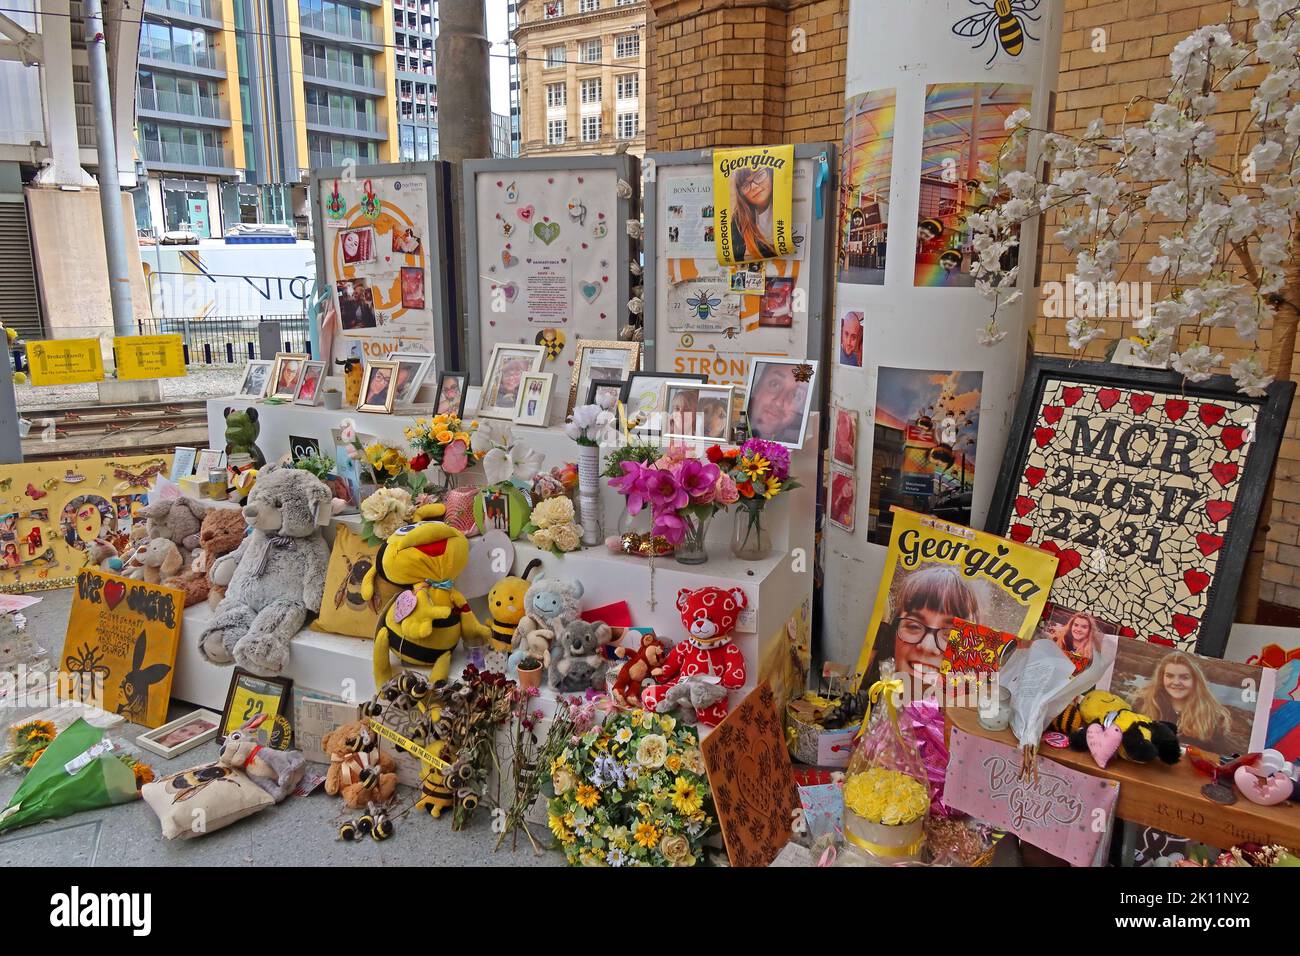 Monument commémoratif de l'attentat à la bombe de Manchester Arena, fleurs, cartes, messages, à la gare Victoria, 22nd mai 2017 - Glade of Light Memorial Banque D'Images